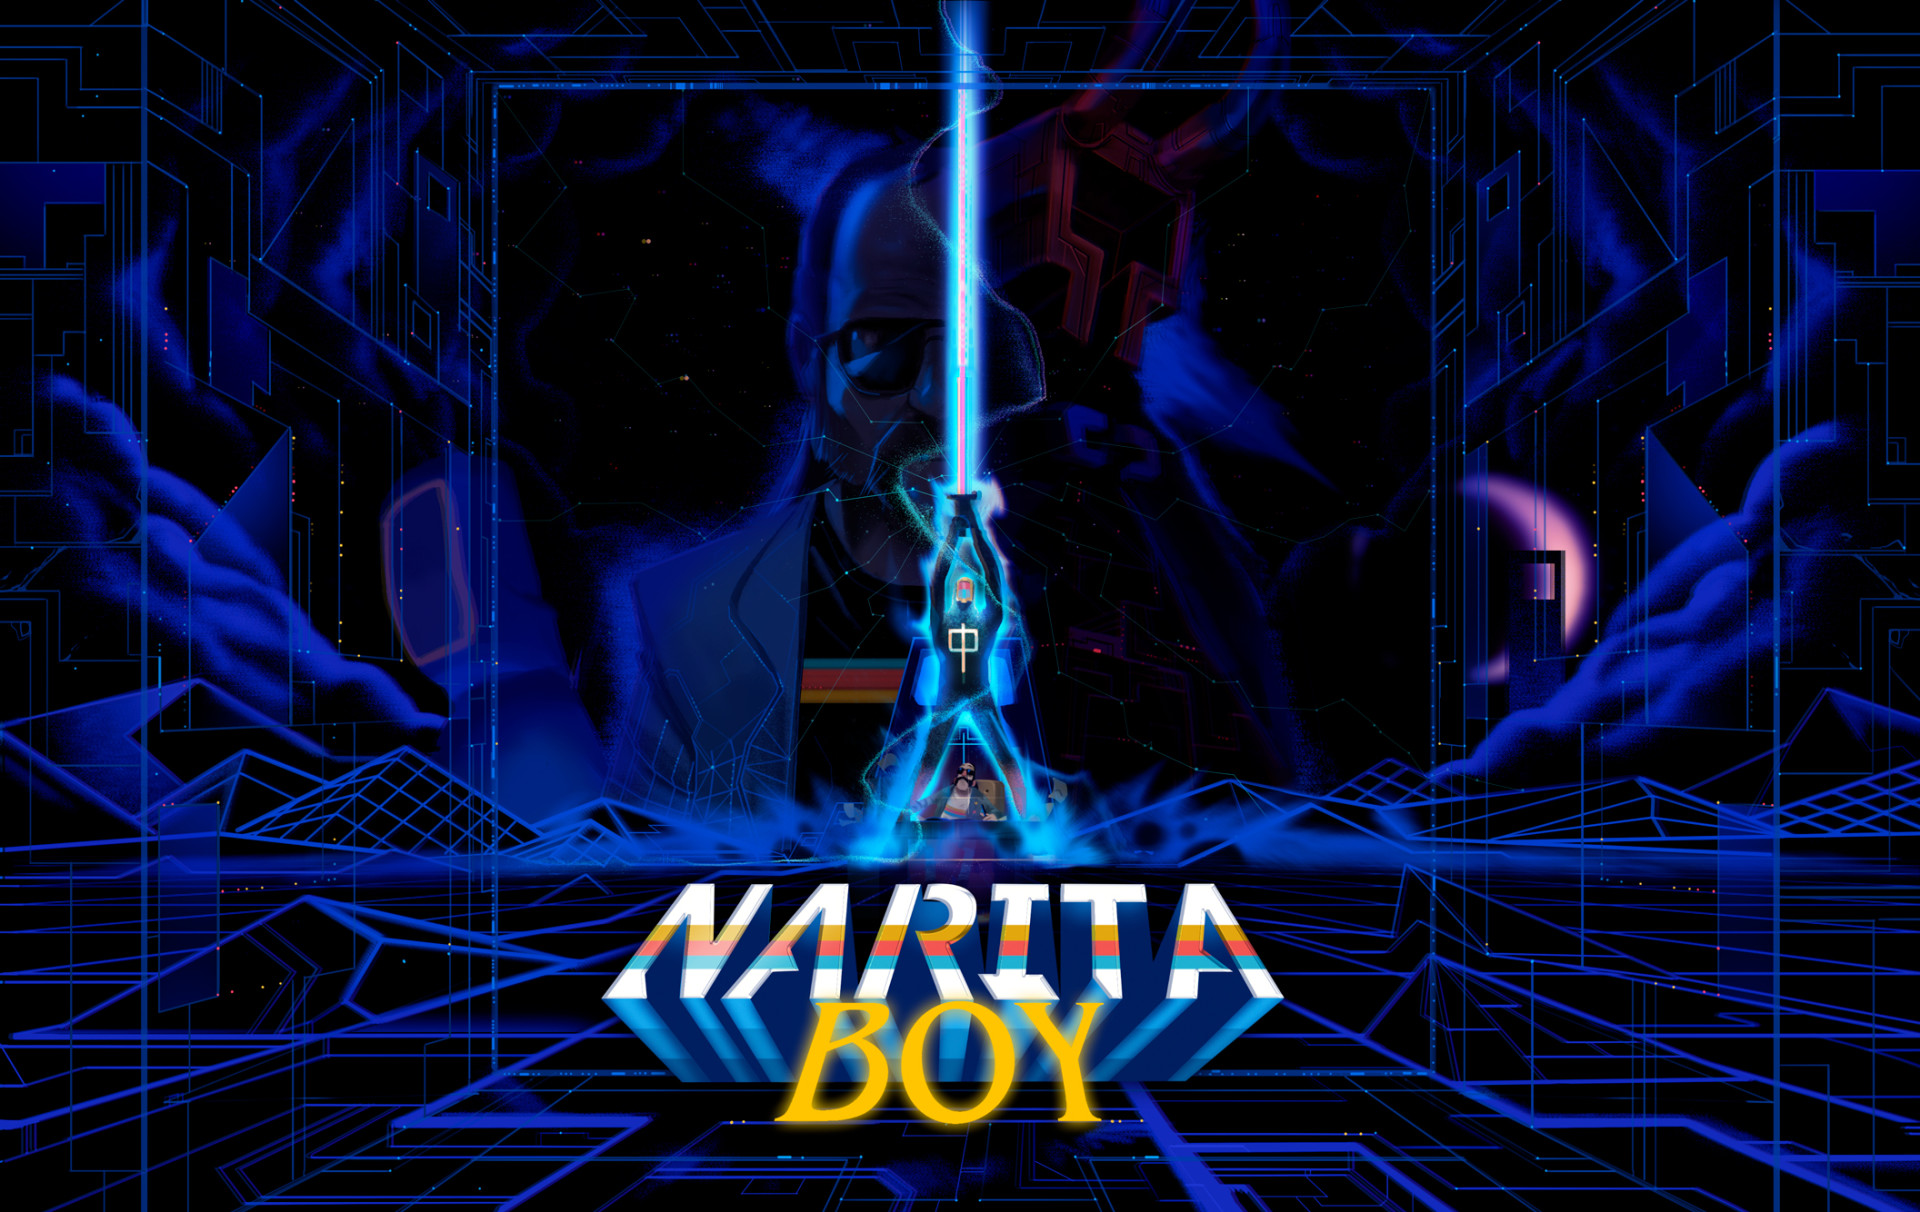 narita boy ba